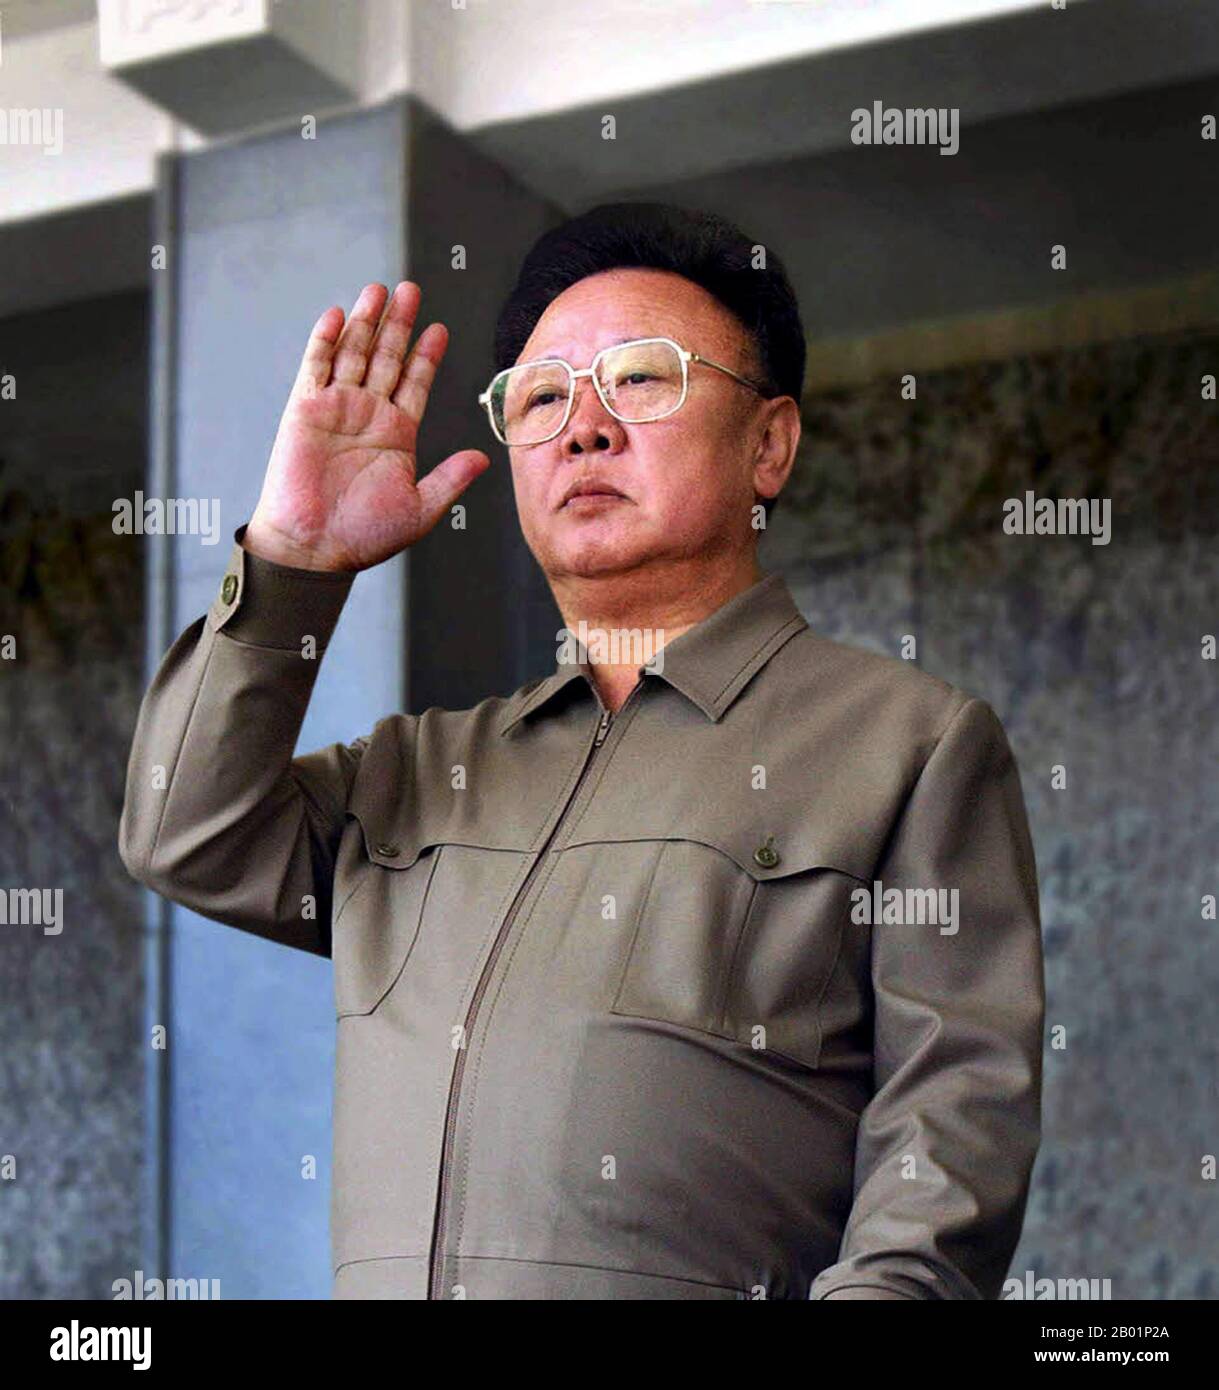 Korea: Nordkoreanischer Führer Kim Jong Il (16. Februar 1941/1942 bis 17. Dezember 2011), Pjöngjang, ca. 2000. Kim Jong-il war von 1994 bis 2011 der oberste Führer Nordkoreas (DVRK). Er folgte seinem Vater und Gründer der DVRK Kim Il-sung nach dem Tod des Ältesten Kim im 1994. Kim Jong-il war Generalsekretär der Arbeiterpartei Koreas, Vorsitzender der Nationalen Verteidigungskommission Nordkoreas und Oberbefehlshaber der Koreanischen Volksarmee, der viertgrößten ständigen Armee der Welt. Stockfoto